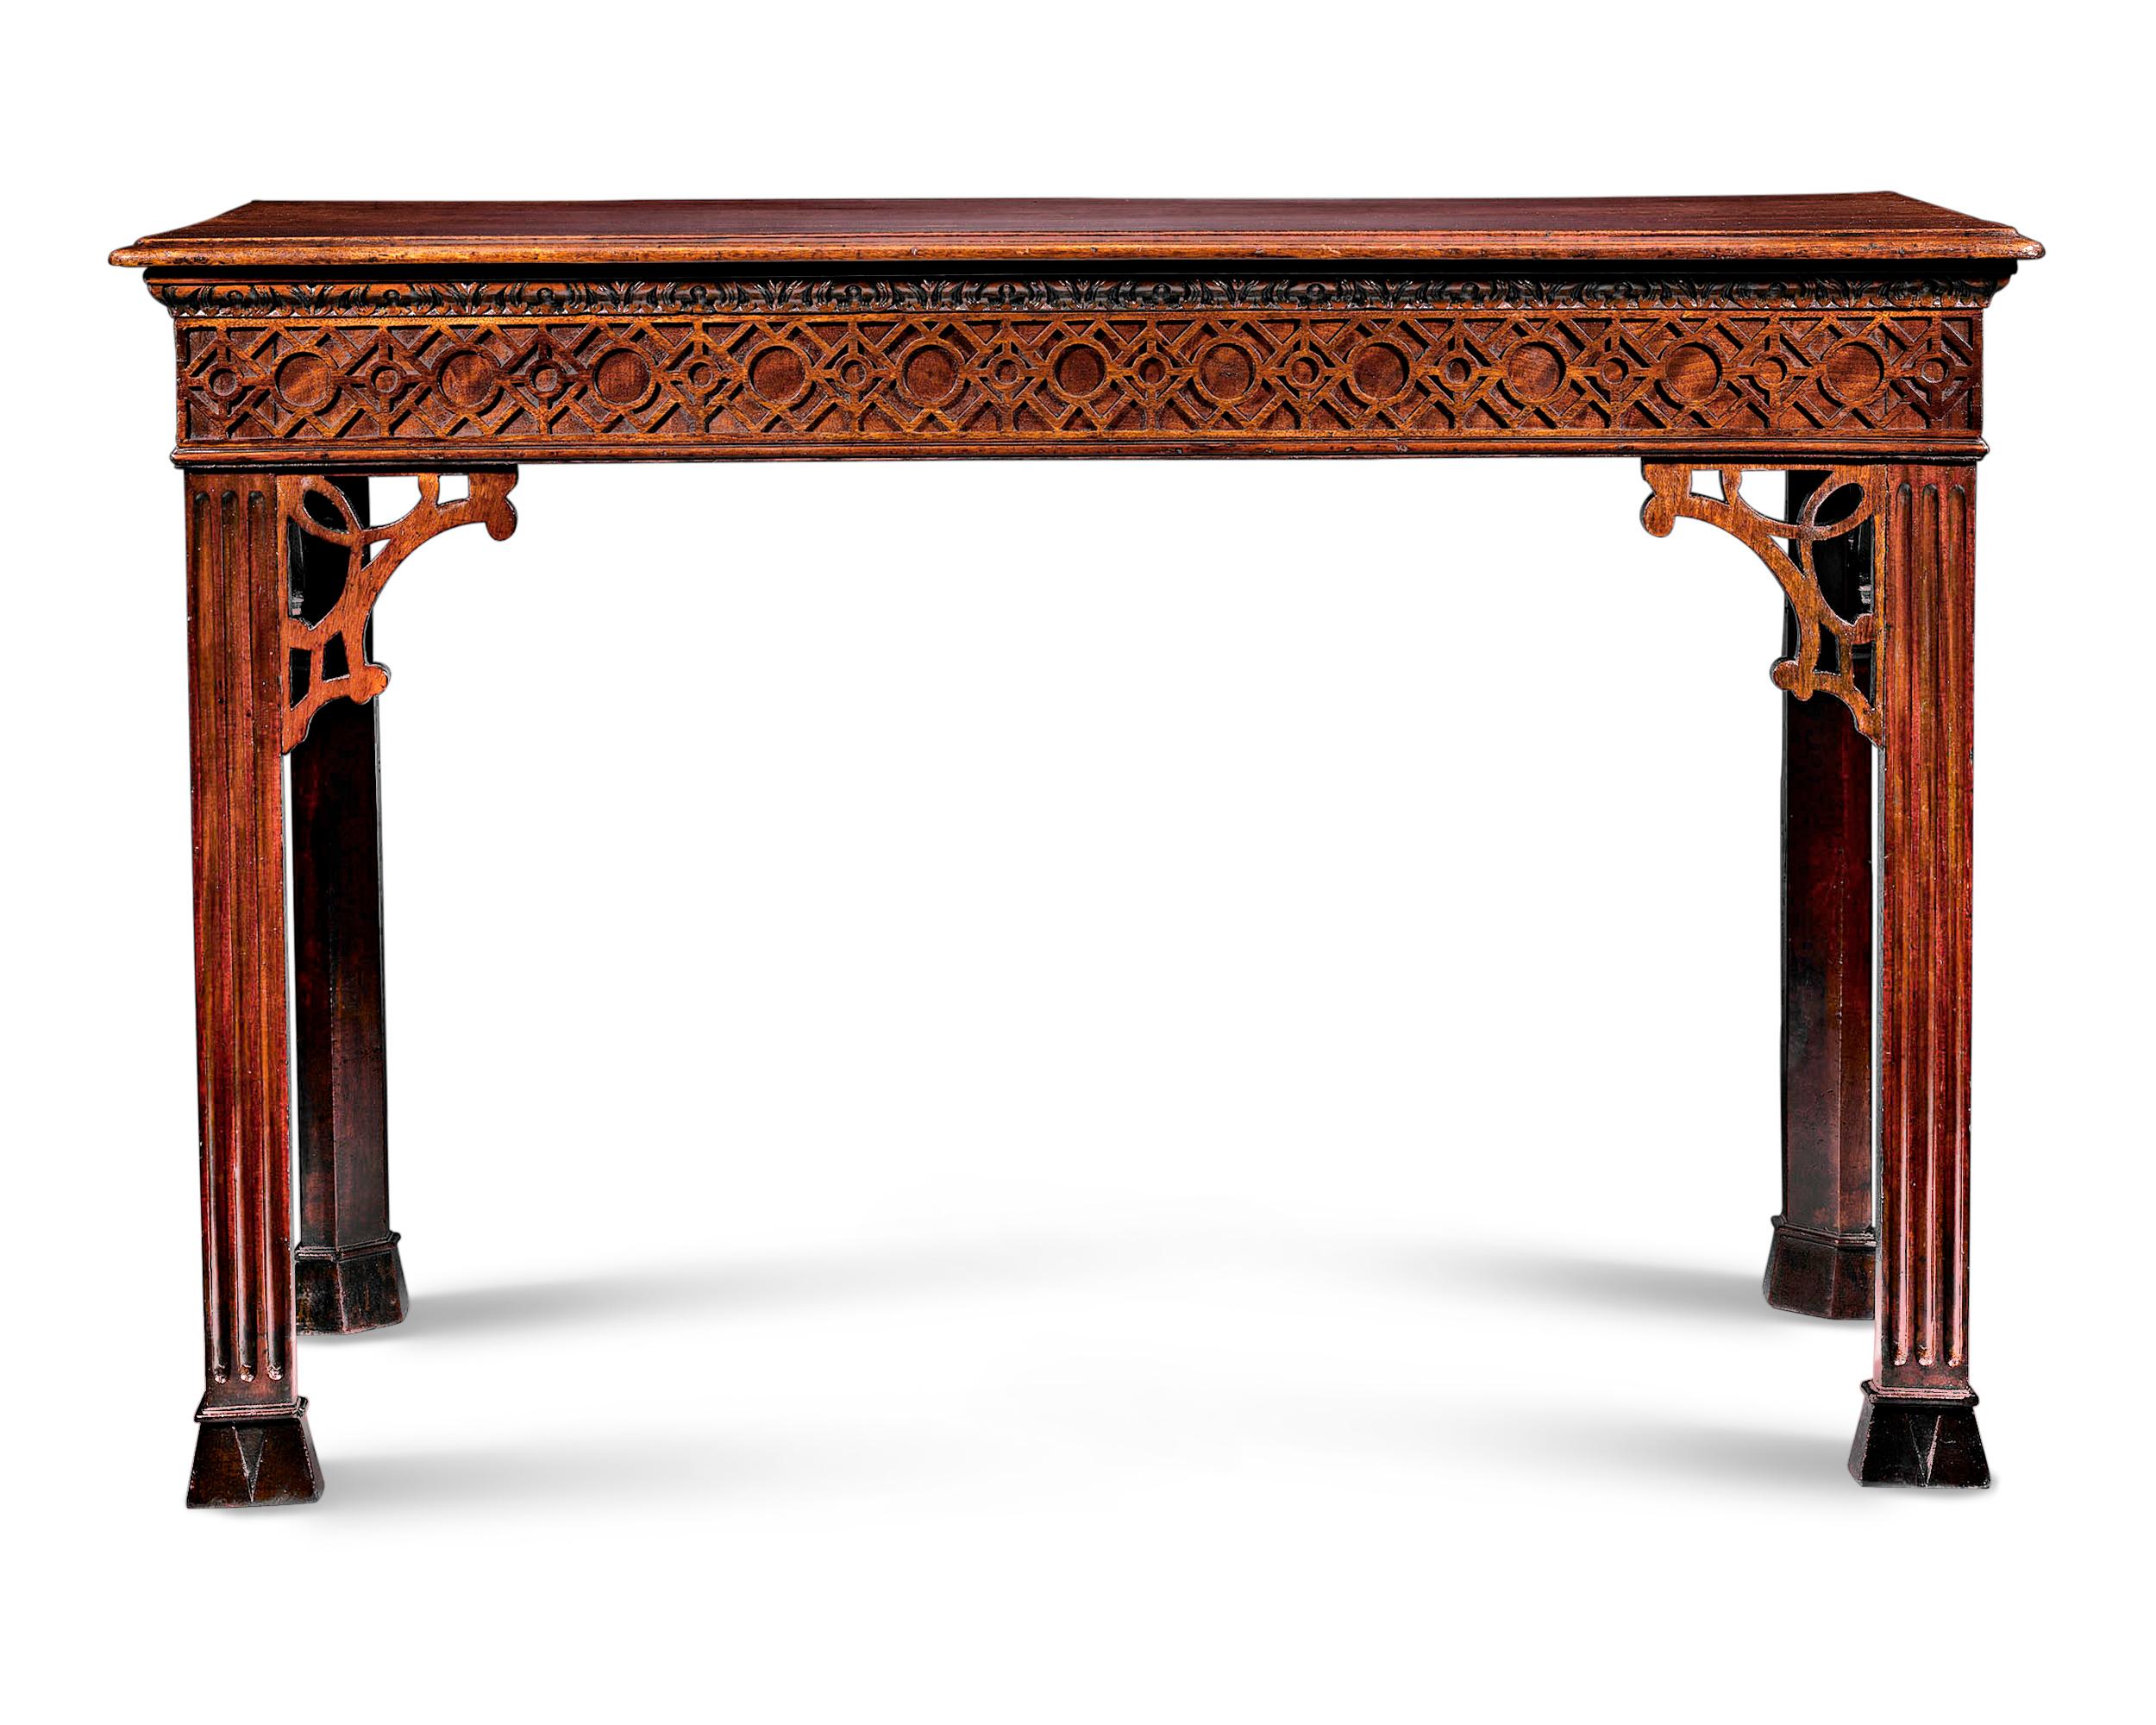 Cette table console anglaise en acajou est un rare exemple d'époque du style chippendale chinois sophistiqué. Combinaison de symétrie et d'équilibre, cette table allie l'élégance sobre de l'époque géorgienne à l'art complexe de l'esthétique